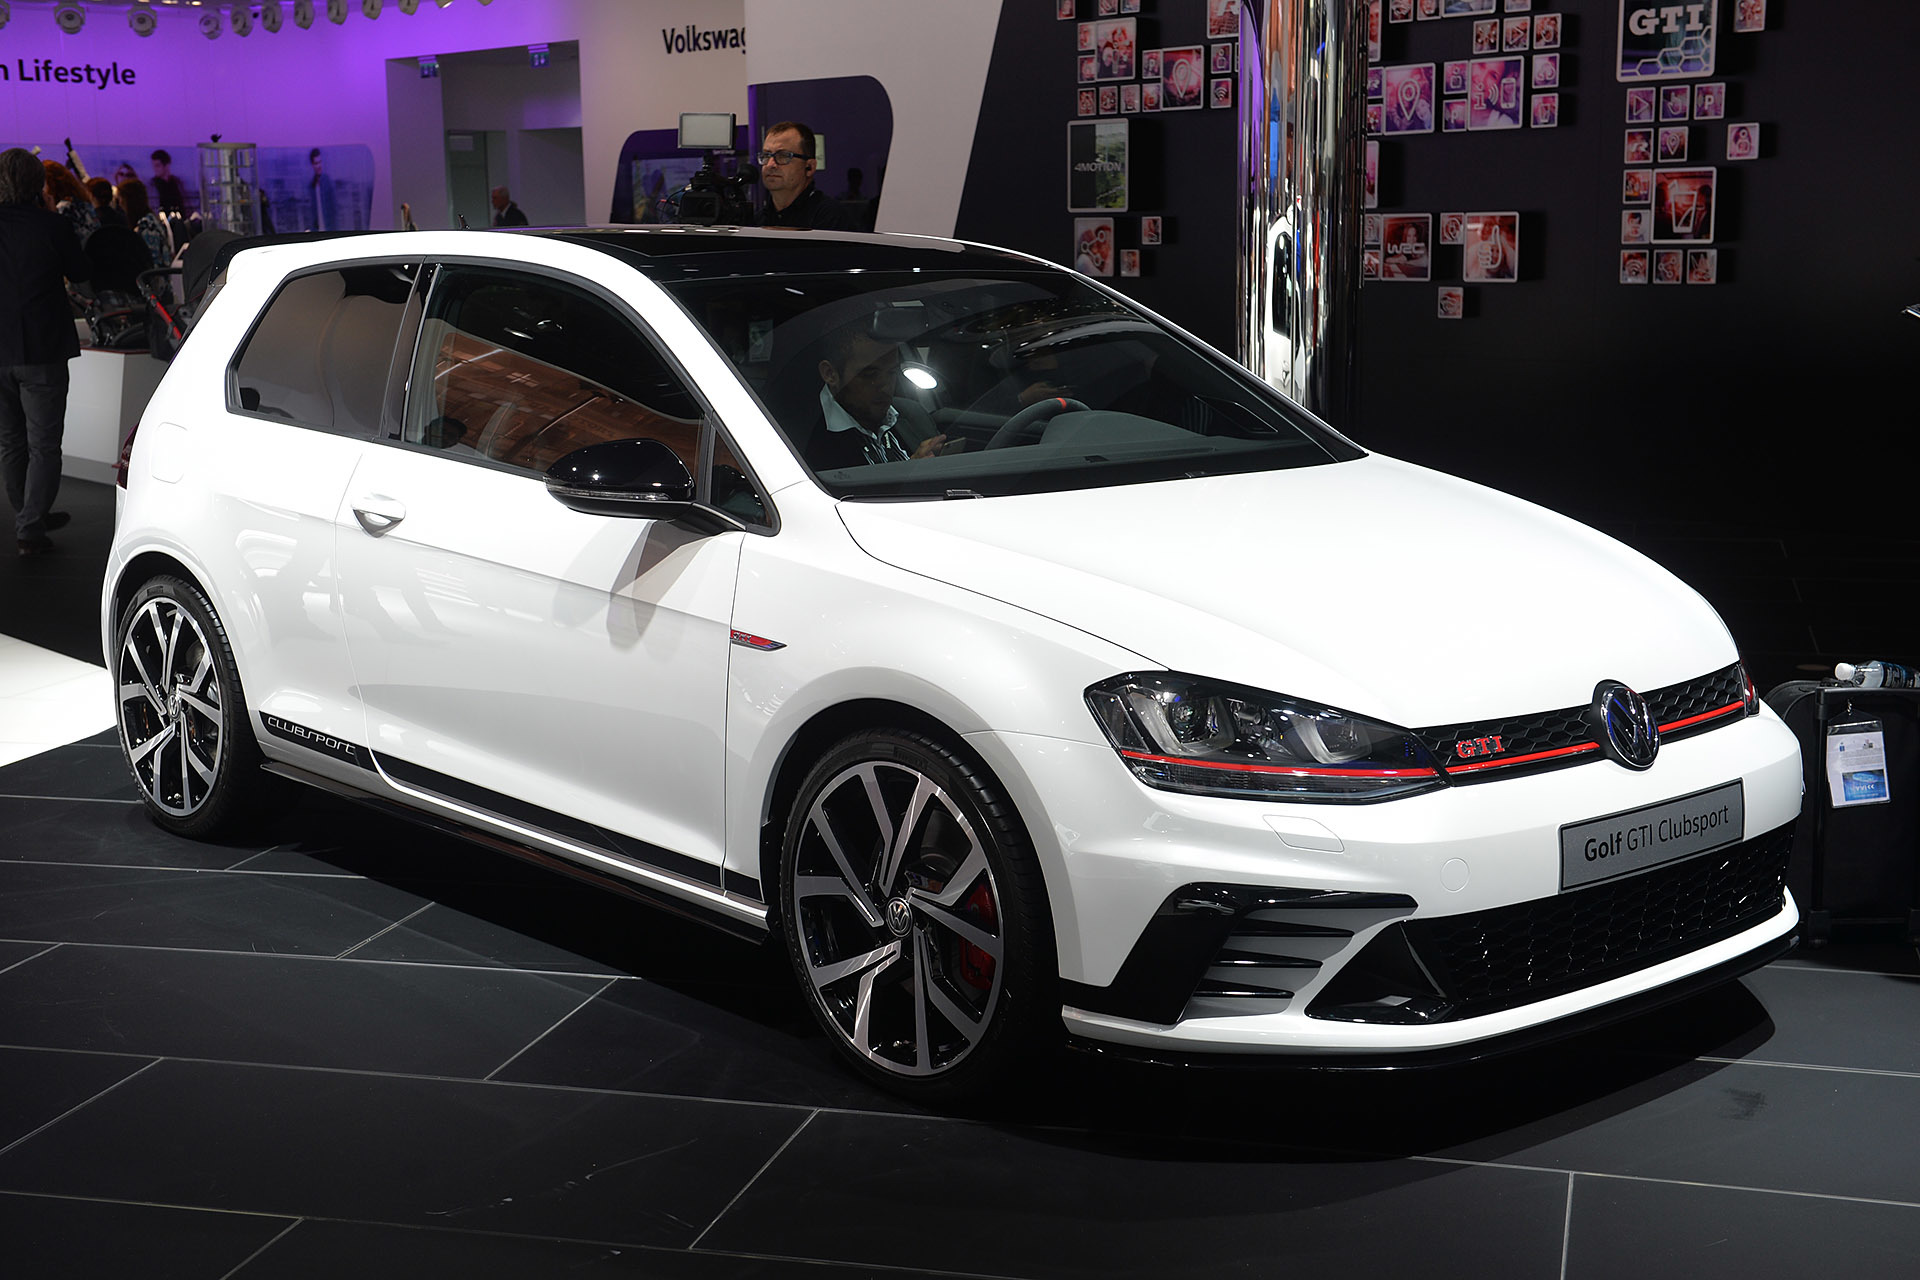 Volkswagen GTI HD wallpapers, Desktop wallpaper - most viewed